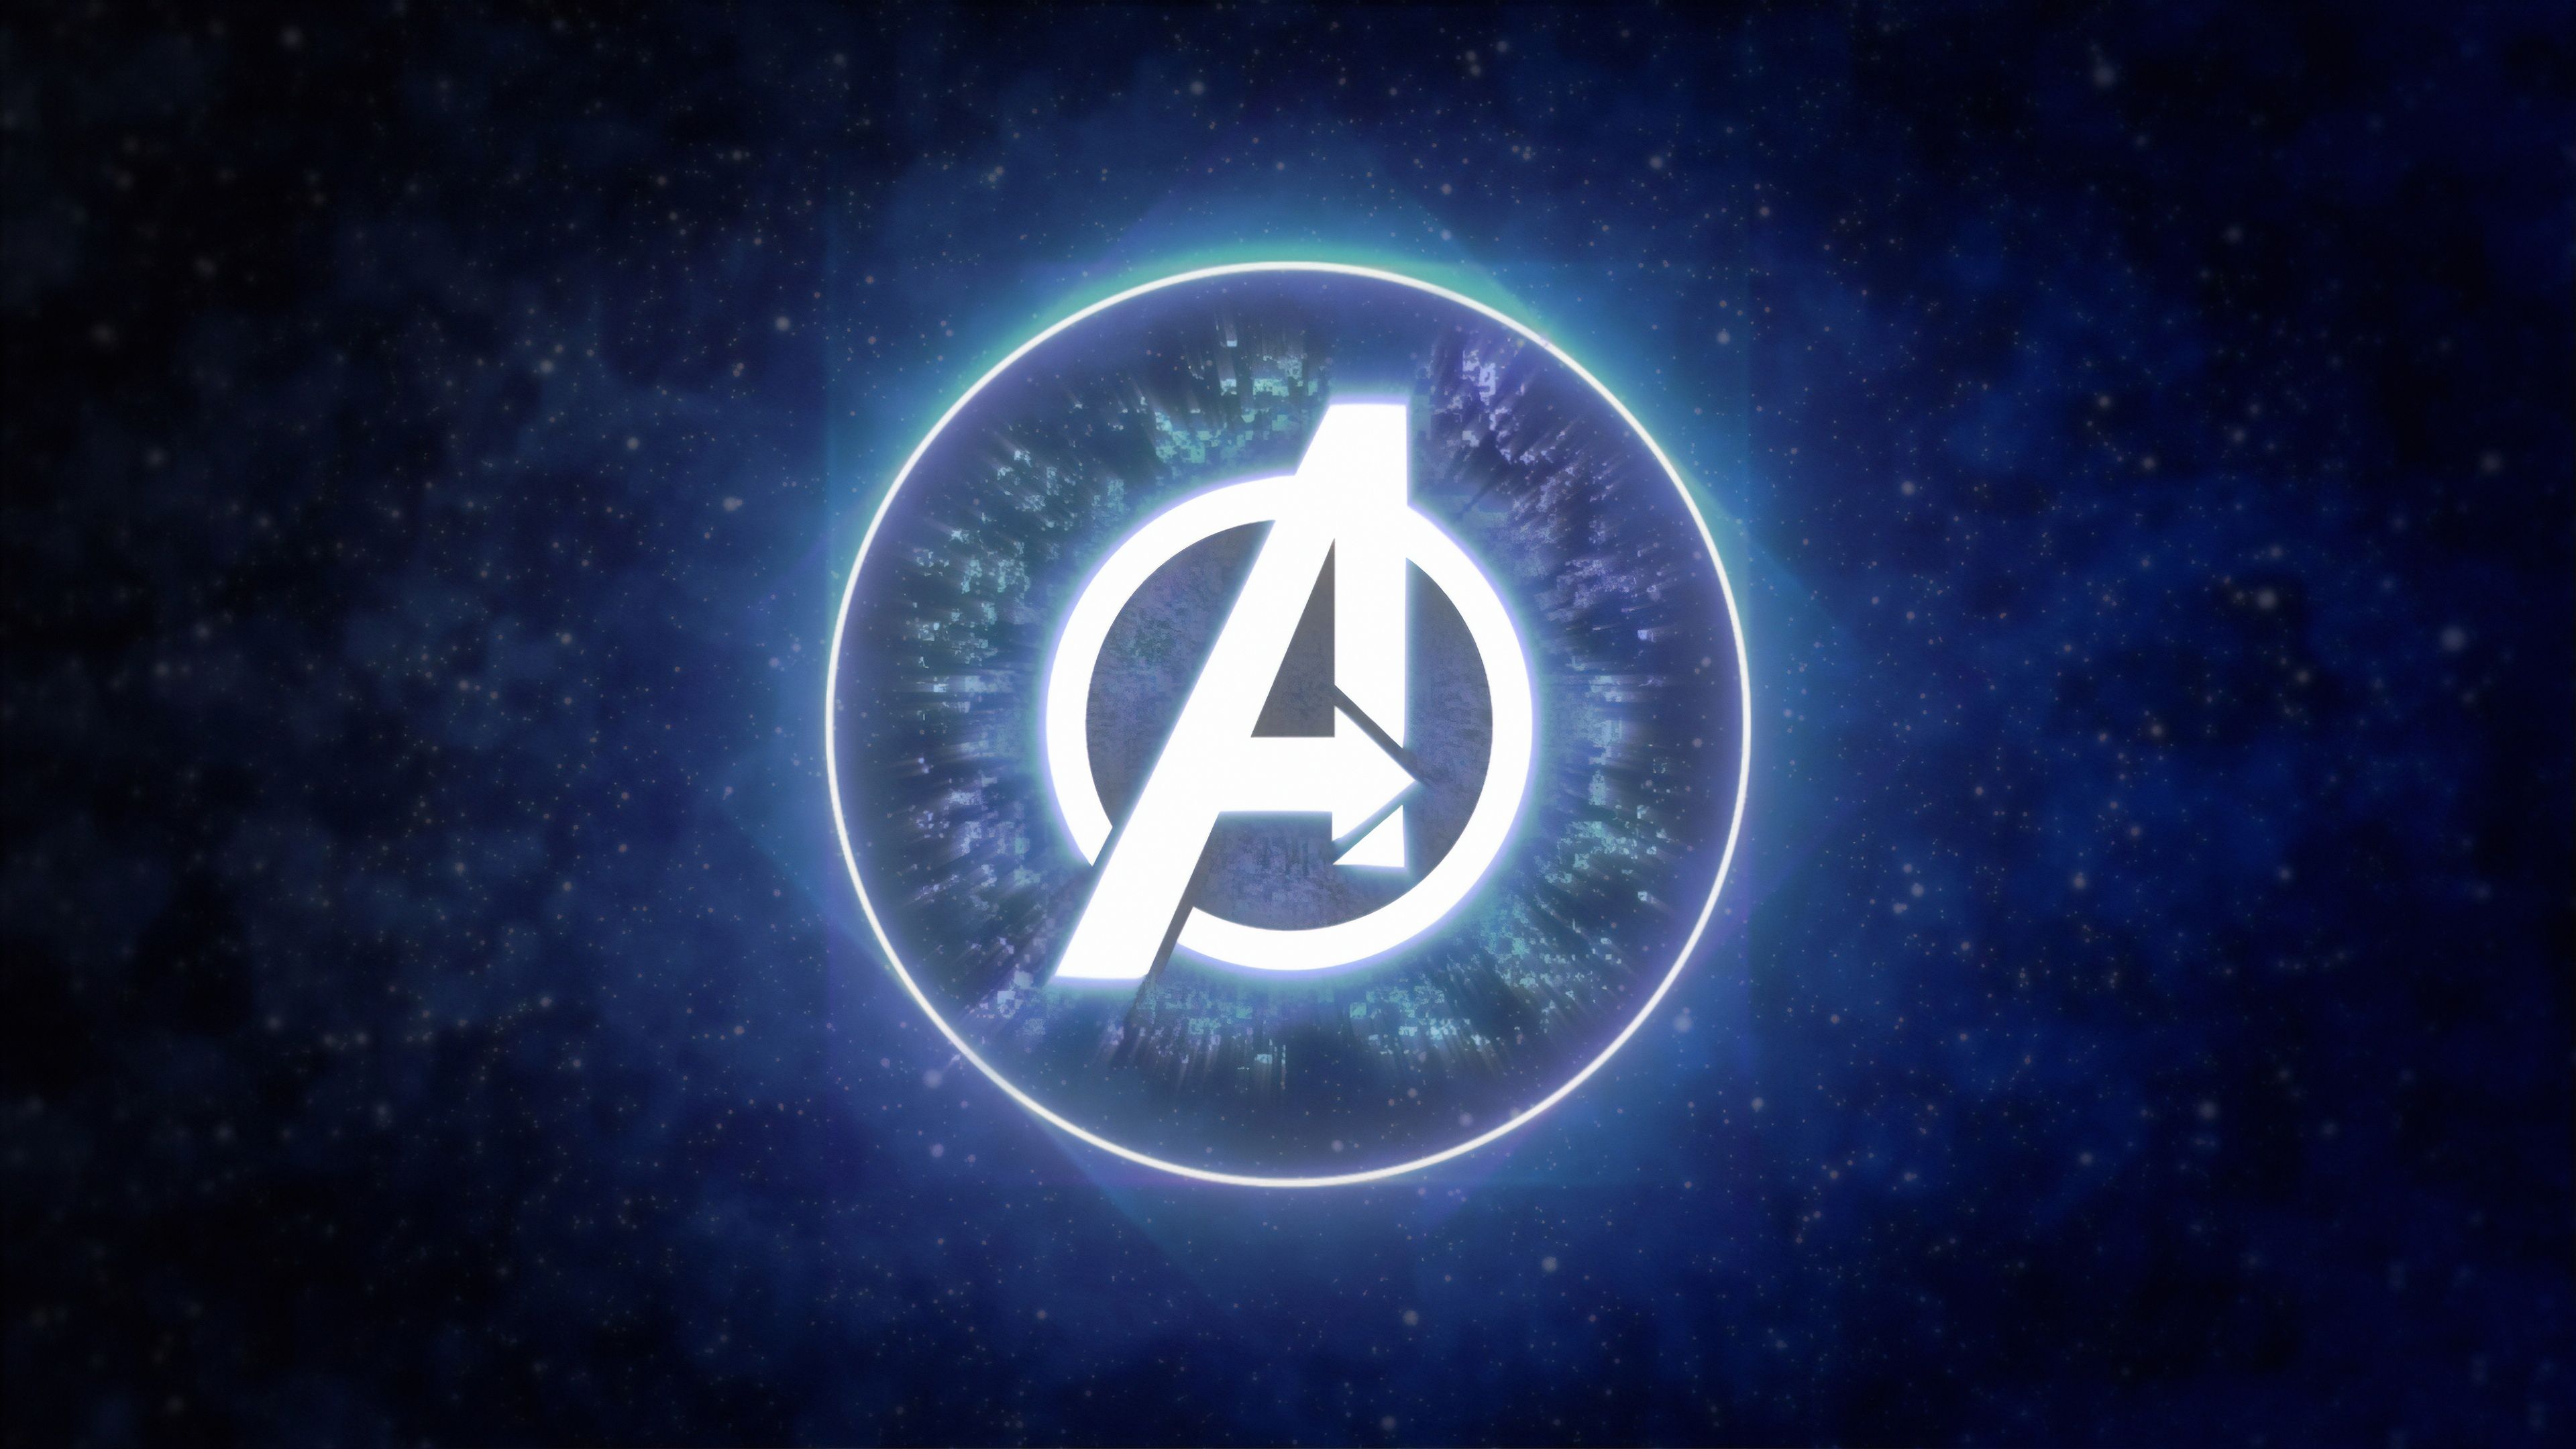 Avengers Logo 4K Wallpaper